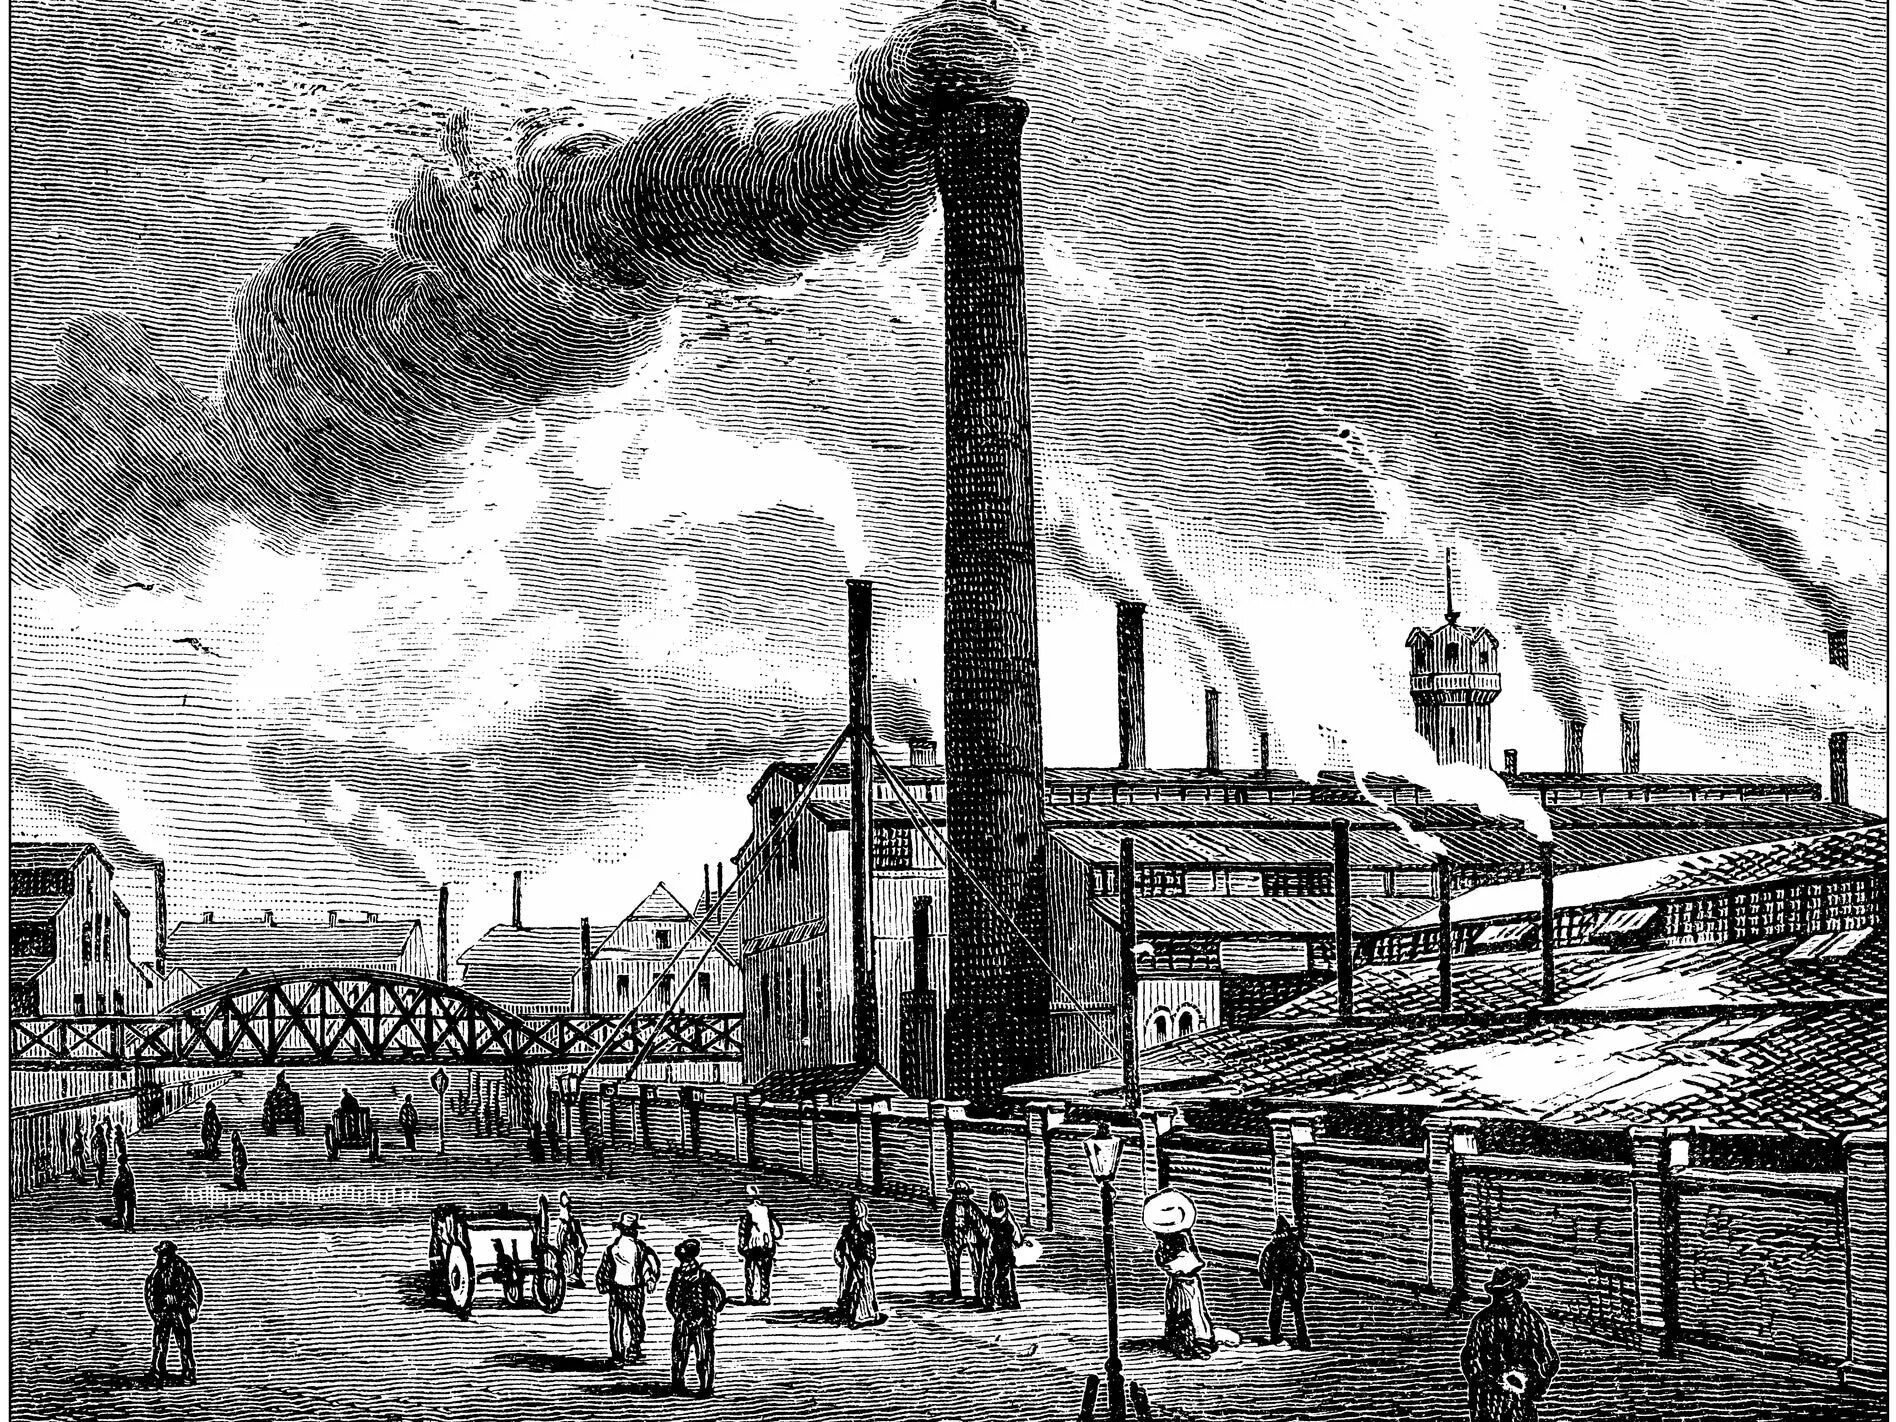 Industrial society. Индустриальное общество 19 века. Индустриальное общество США 19 век. Англия 18 век Индустриальная революция. Промышленная революция 19.век США.